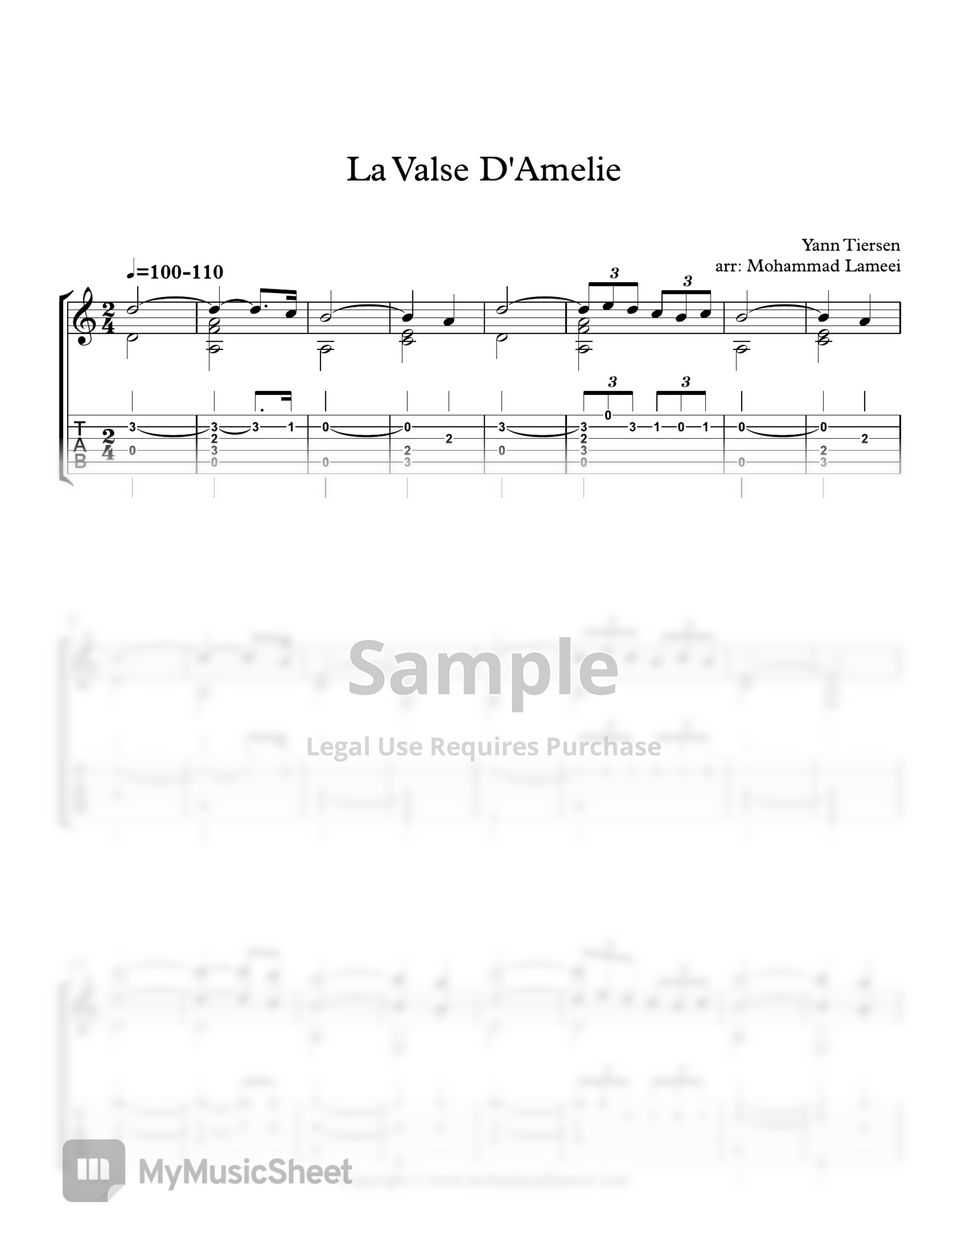 Yann Tiersen - La Valse D'Amélie by Mohammad Lameei